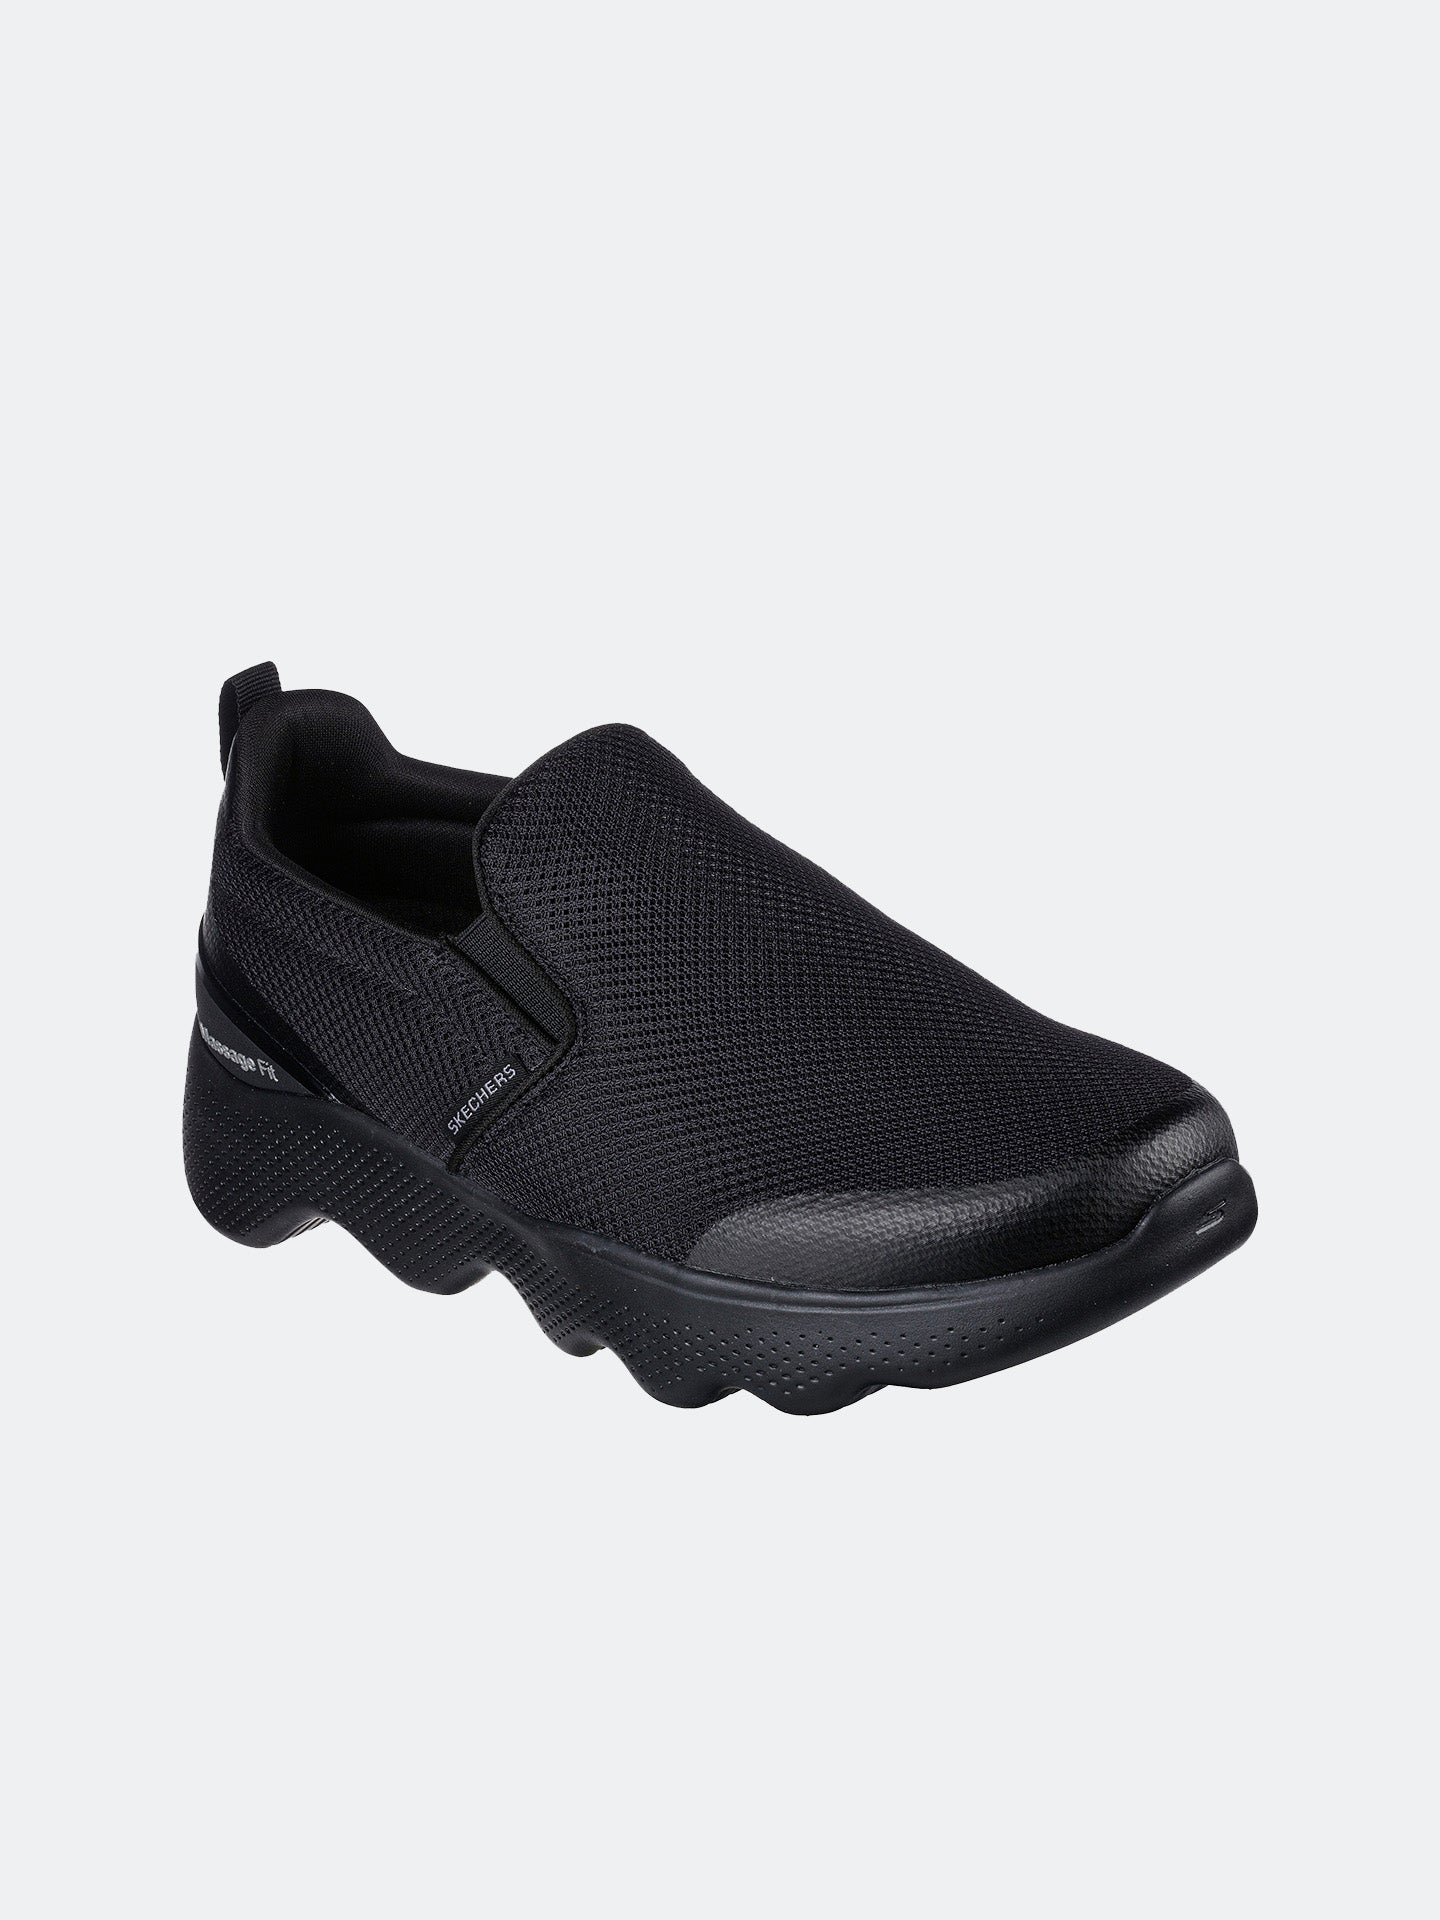 Skechers Men's Go Walk Massage Fit - Ripple Shoes #color_Black